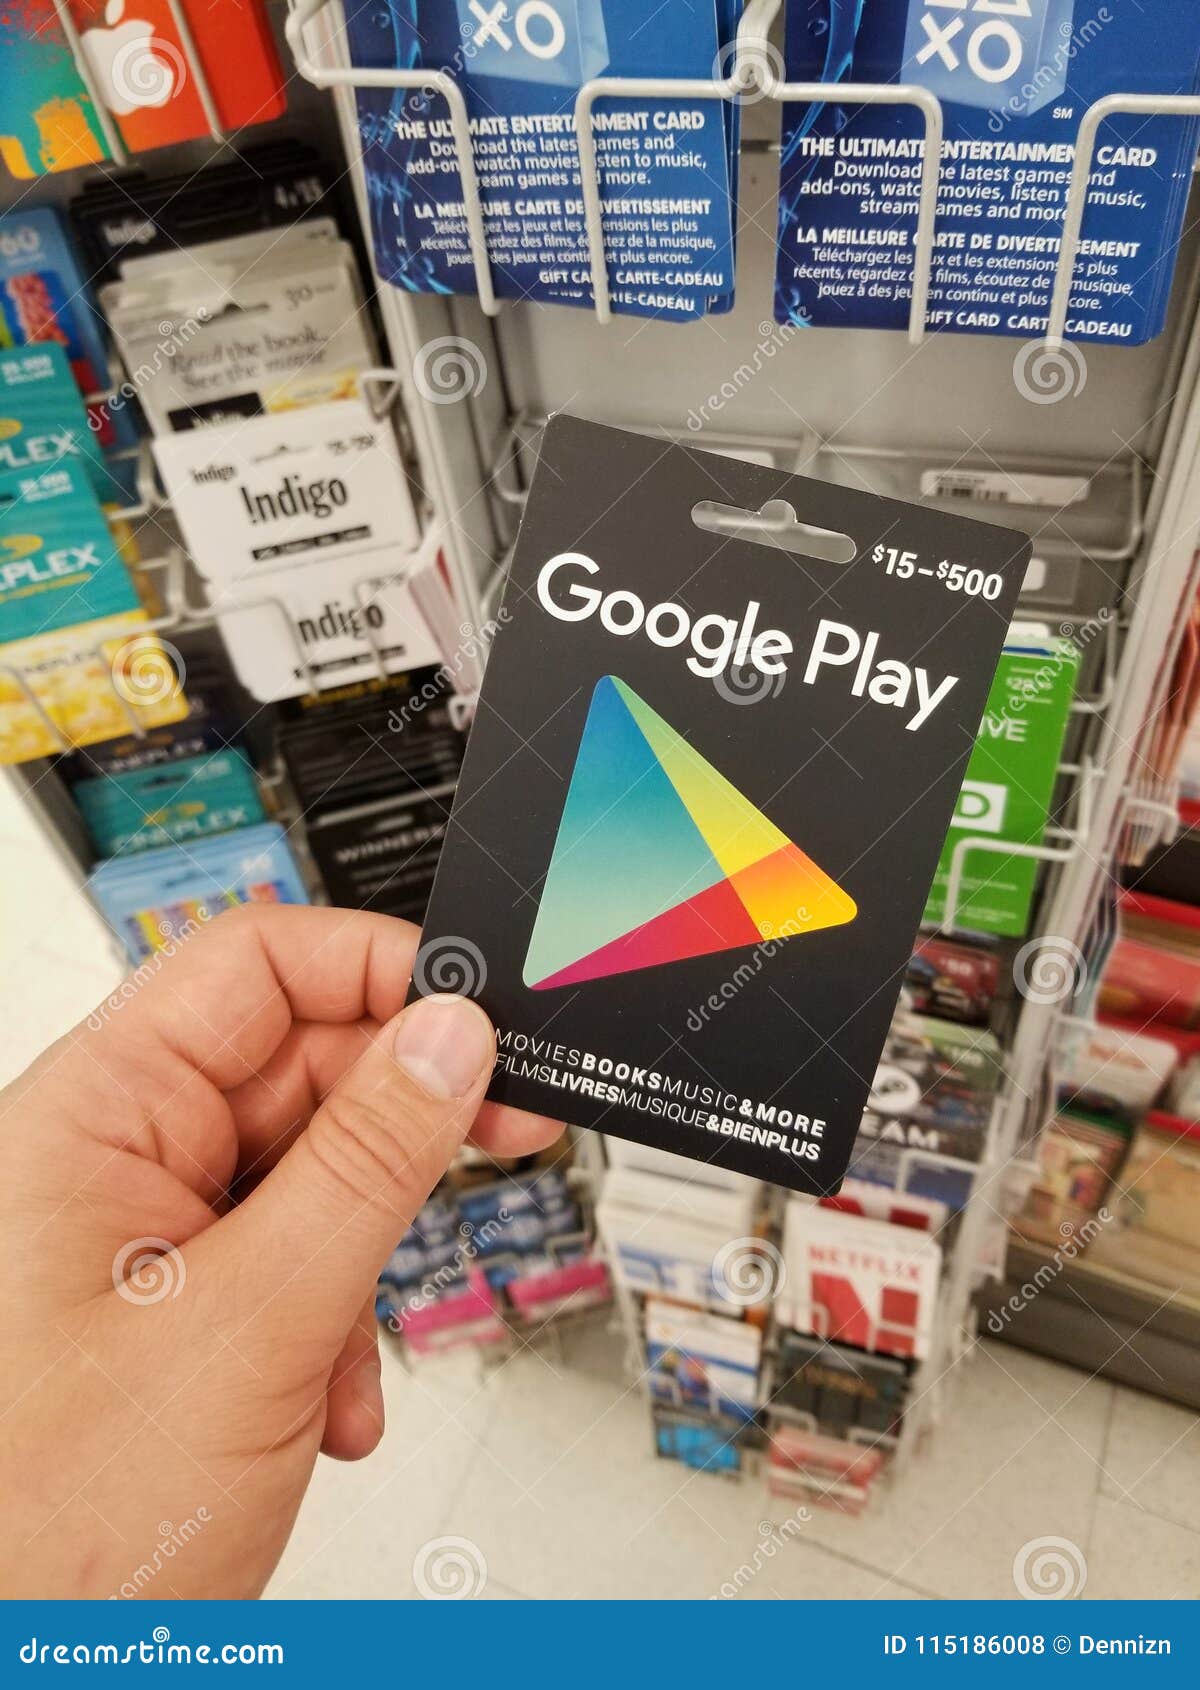 Comprar Cartão Google Play (Gift Card) $5 Dólares USA